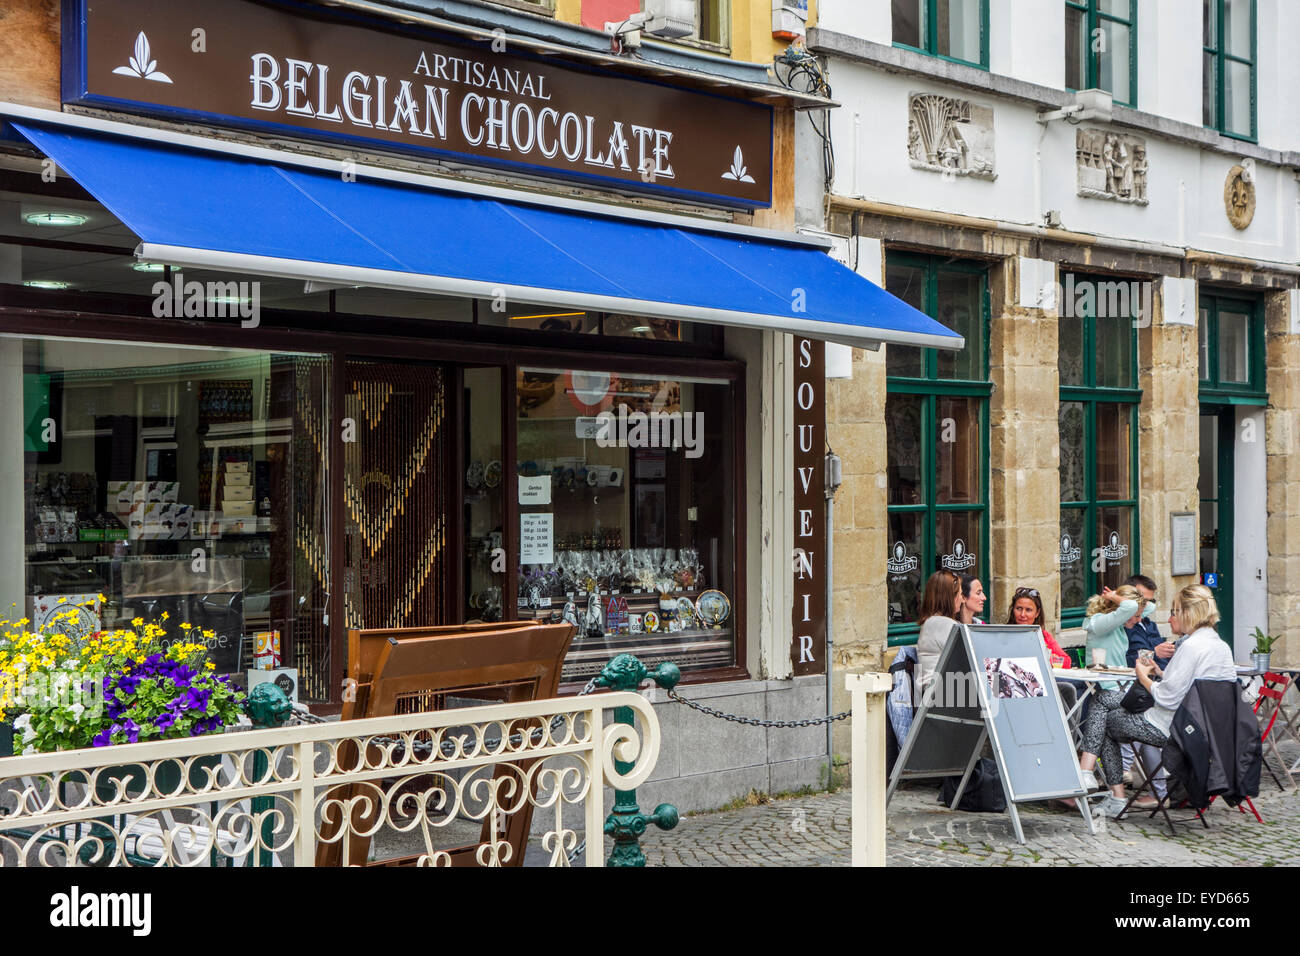 Chocolatería artesanal del chocolate belga tienda de venta de variedades de praliné y pastelería en la ciudad de Gante, Bélgica Foto de stock